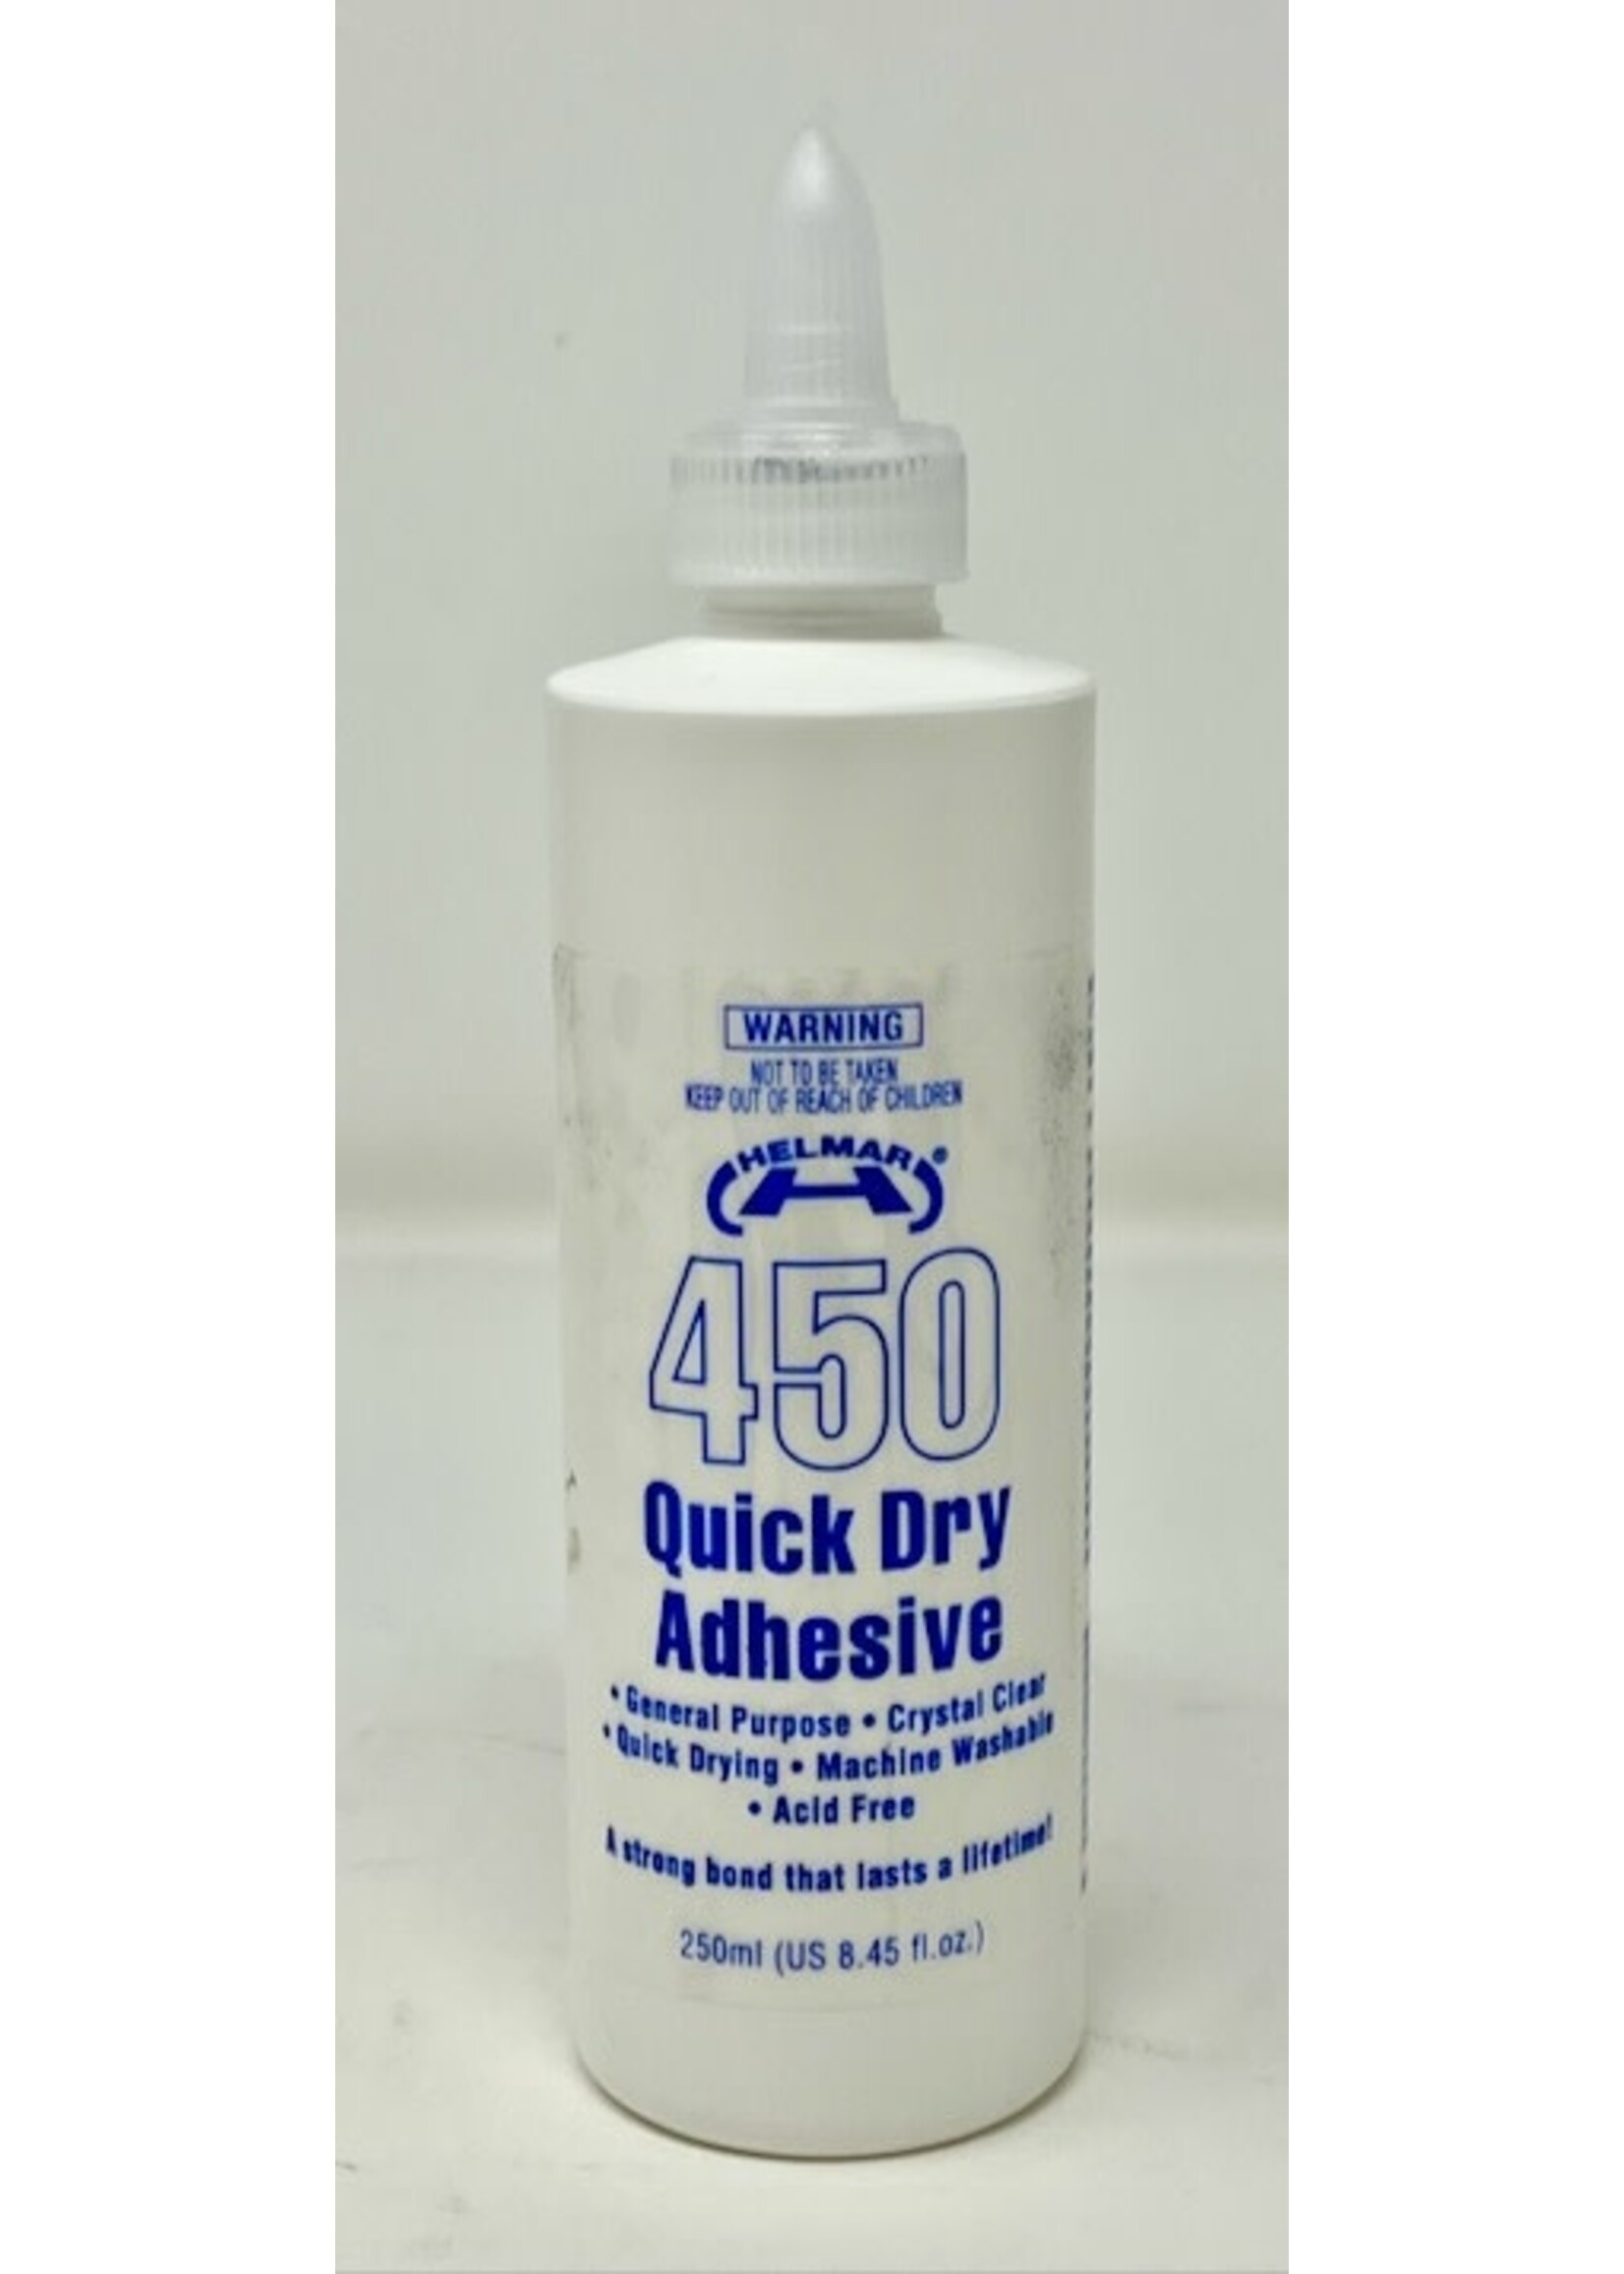 Helmar 450 Quick Dry Adhesive, 8.45 oz.